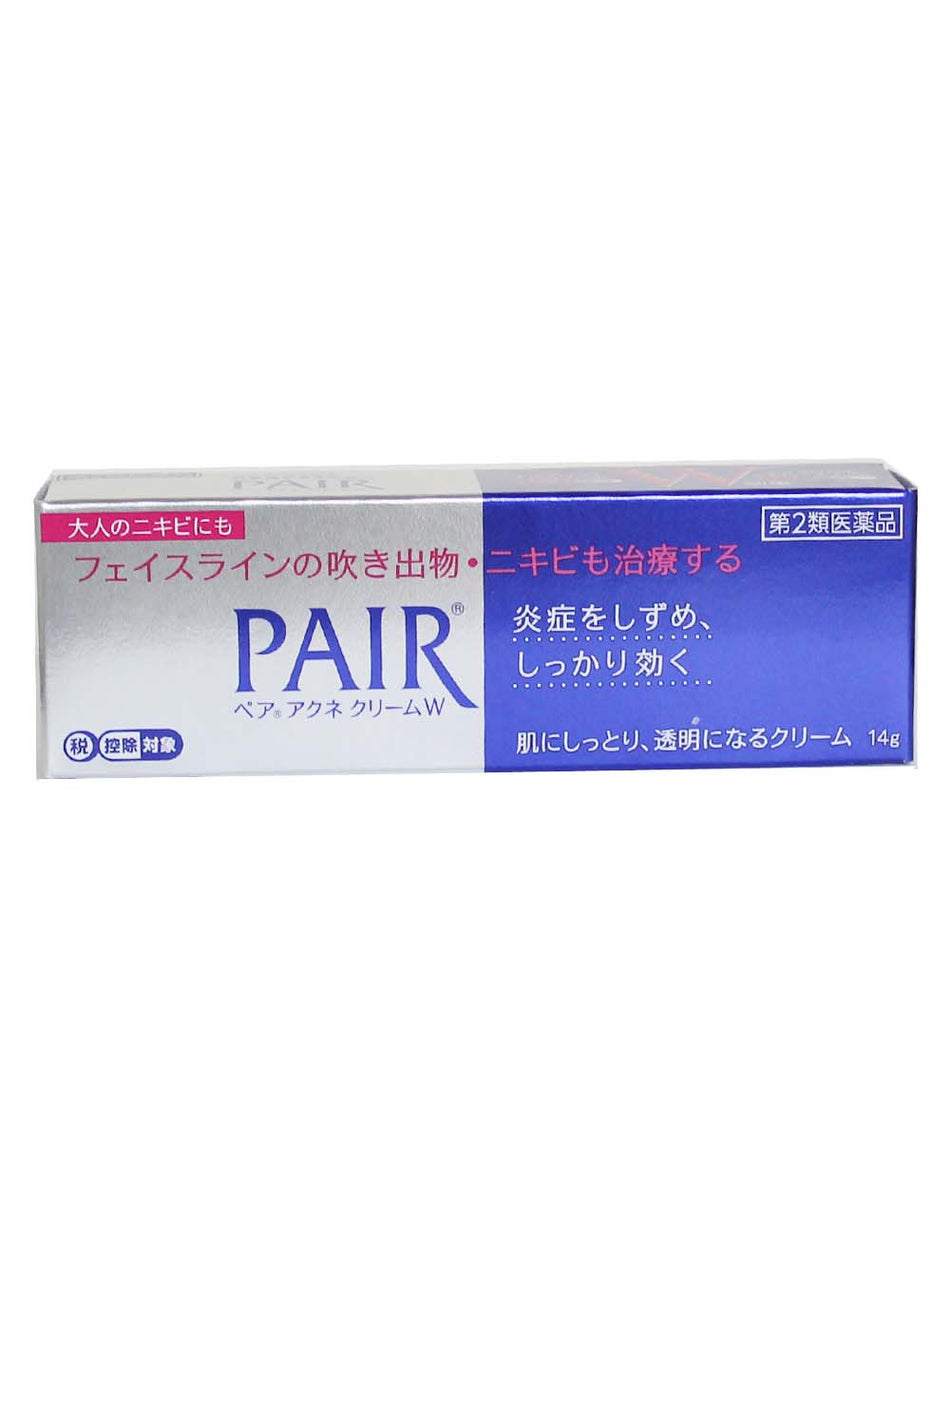 Lion Pair Acne Cream